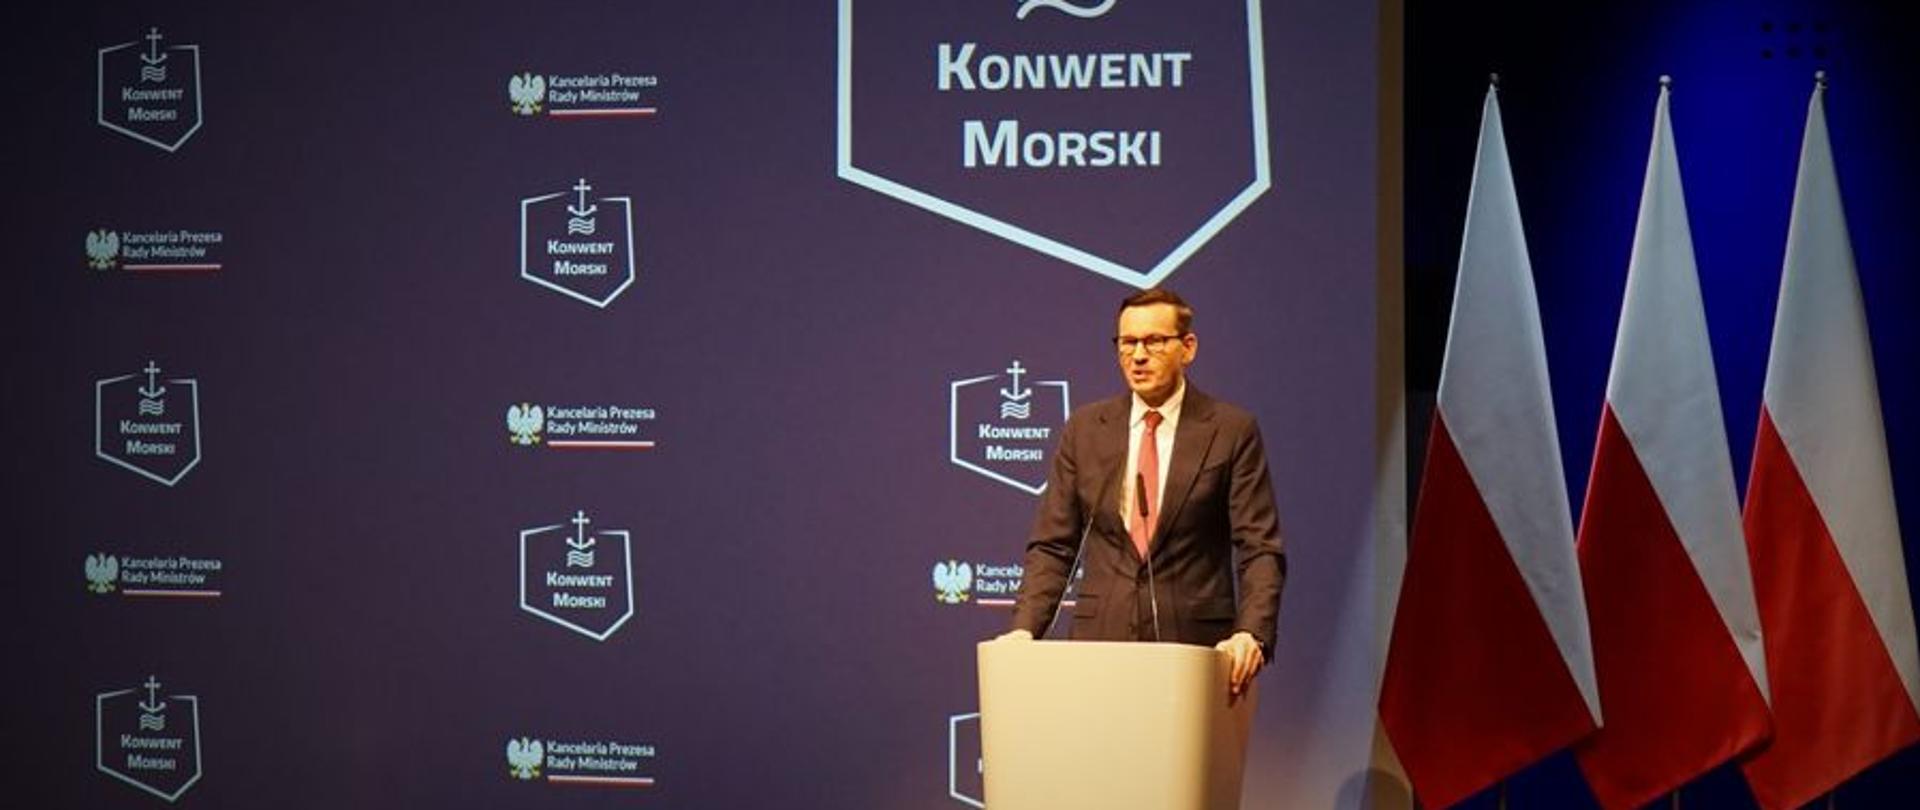 Mężczyzna stojąc przy mównicy przemawia za nim ustawione są trzy flagi Polski oraz baner z napisem Konwent Morski oraz logo.